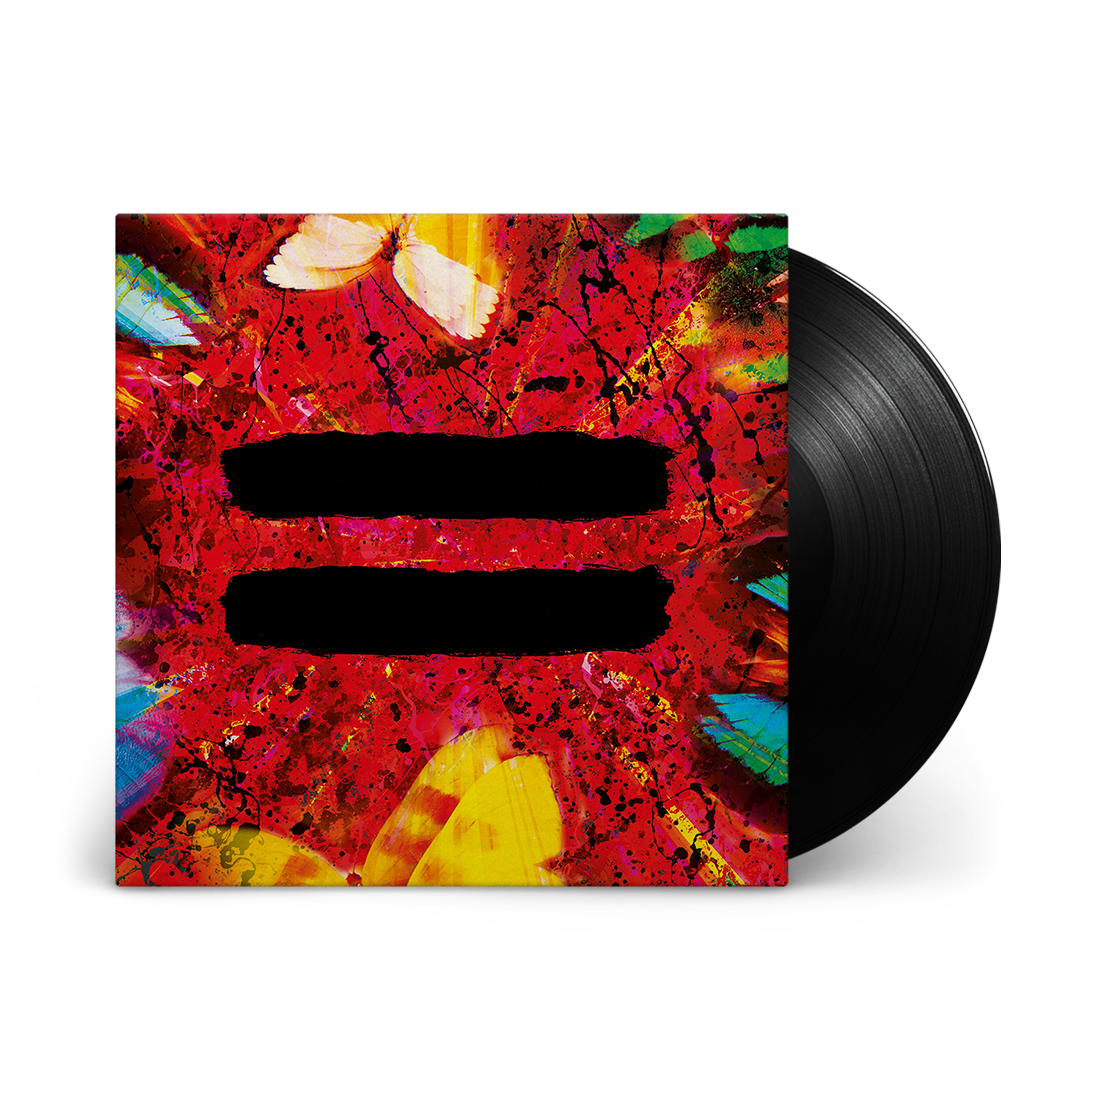 Ed Sheeran - = (Equals): Vinyl LP